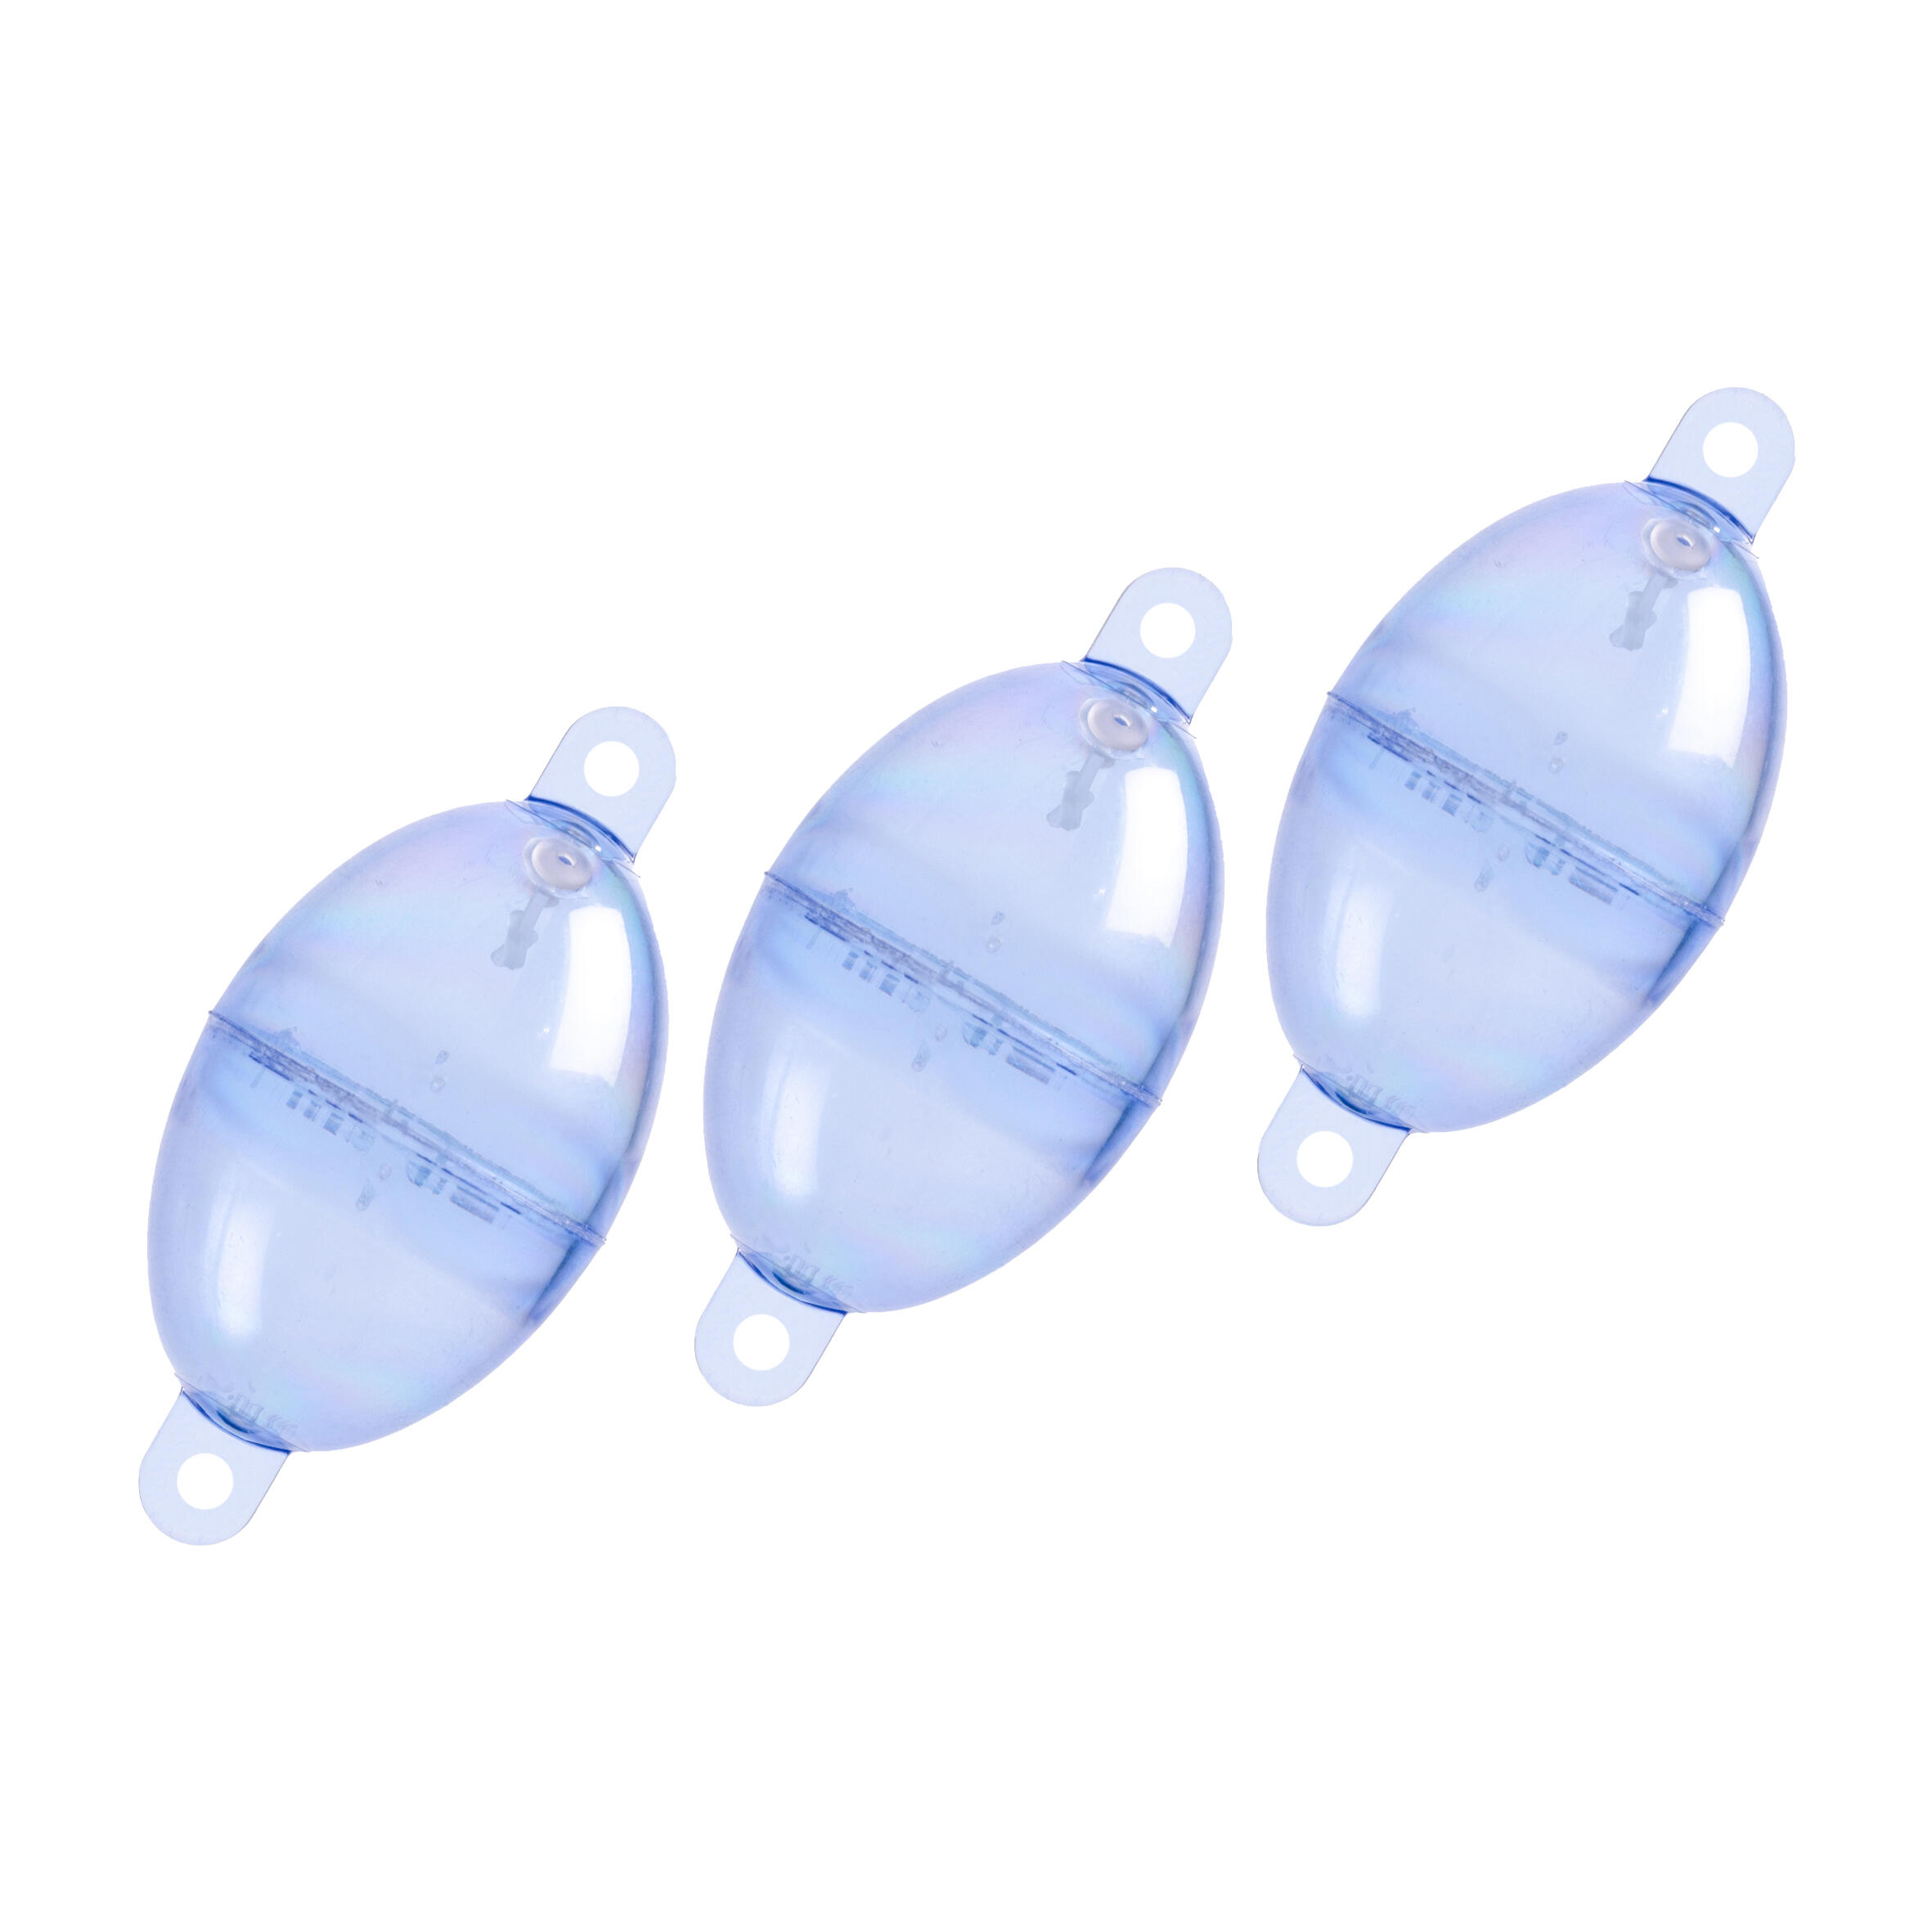 Oval Buldo N°4 clear x3 sea fishing bubble float 2/3